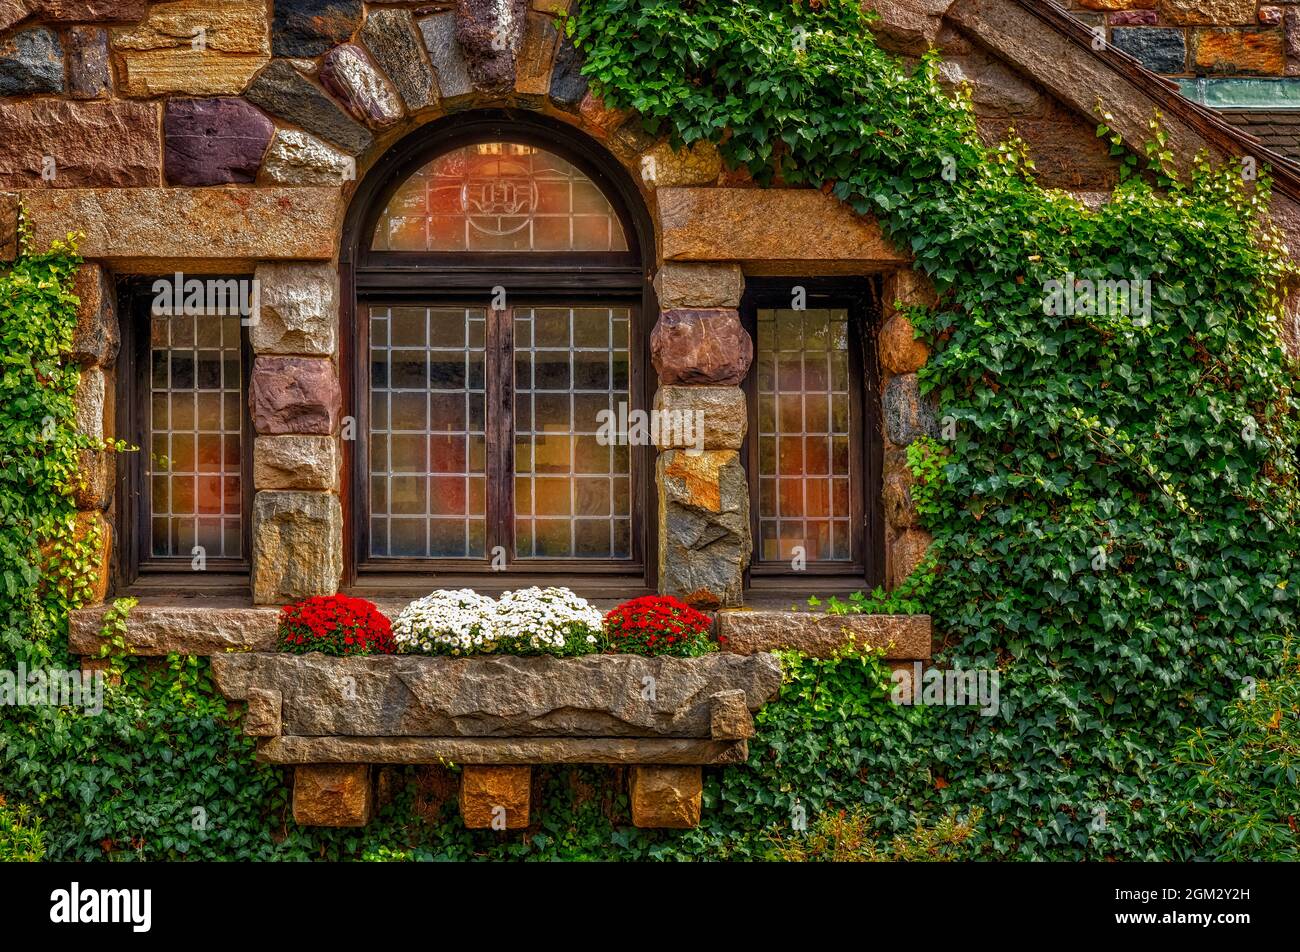 Otoño reflectante - Antigua estructura de piedra con ventanas que reflejan los colores del otoño. También se ven flores de cristhantemos en la caja de flores. Este yo Foto de stock